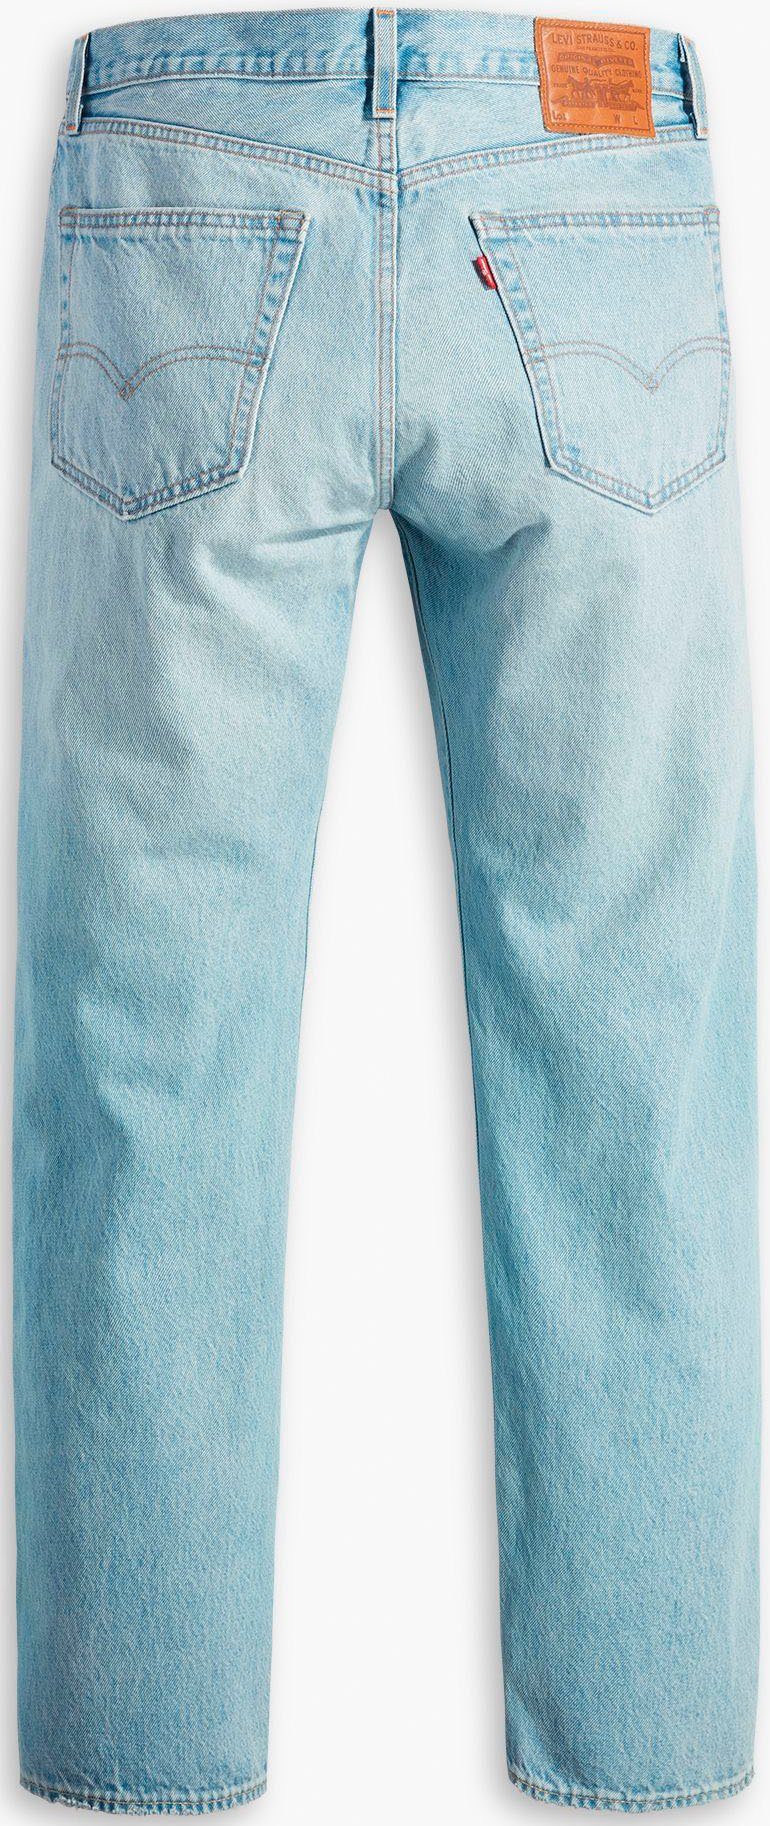 mit squeez Straight-Jeans just me AUTHENTIC 551Z Levi's® Lederbadge